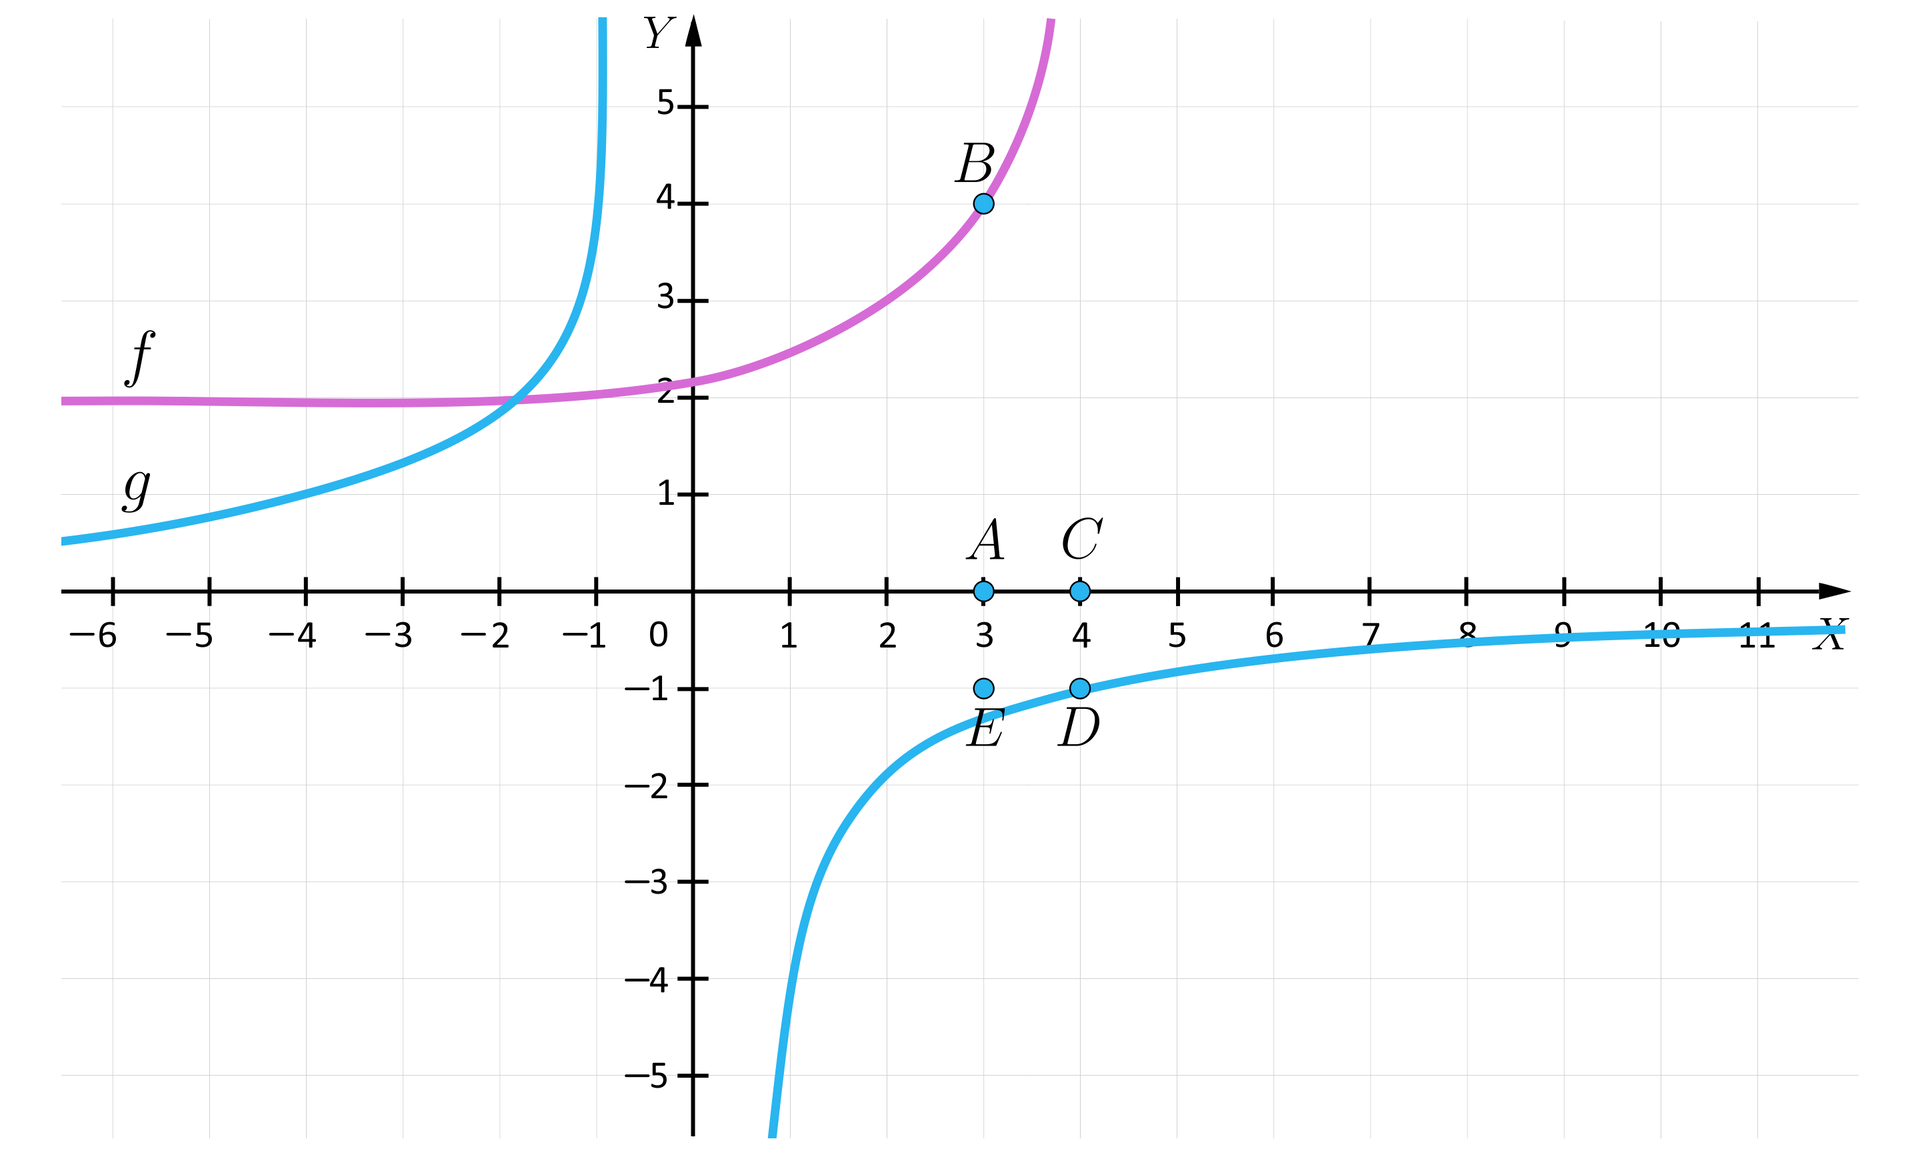 Na ilustracji przedstawiony jest układ współrzędnych z pionową osią od minus sześciu do jedenastu i pionową osią Y od minus pięciu do pięciu.  W układzie współrzędnych zaznaczono wykres funckji f kolorem różowym , która dla argumentów od minus nieskończoności do minus jeden włącznie przyjmuje wartość równą dwa od minus jeden zaczyna rosnąć uciekając z wartościami do plus nieskończoności dla co raz większych argumentów. Kolorem niebieskim zaznaczono wykres funkcji g który jest hiperbolę znajdującą się w drugiej i czwartej ćwiartce Pierwszy fragment przechodzi prze punkty nawias minus cztery średnik jeden zamknięcie nawiasu oraz nawias minus dwa średnik dwa zamknięcie nawiasu, a drugie przez nawias jeden średnik minus cztery zamknięcie nawiasu oraz nawias dwa średnik minus dwa zamknięcie nawiasu.  Zaznaczono punkt A o współrzędnych nawias trzy średnik zero zamknięcie nawiasu, punkt B o współrzędnych nawias trzy średnik cztery zamknięcie nawiasu, punkt C o współrzędnych nawias cztery średnik zero zamknięcie nawiasu, punkt D nawias cztery średnik minus jeden zamknięcie nawiasu, punkt E nawias trzy średnik minus jeden zamknięcie nawiasu.